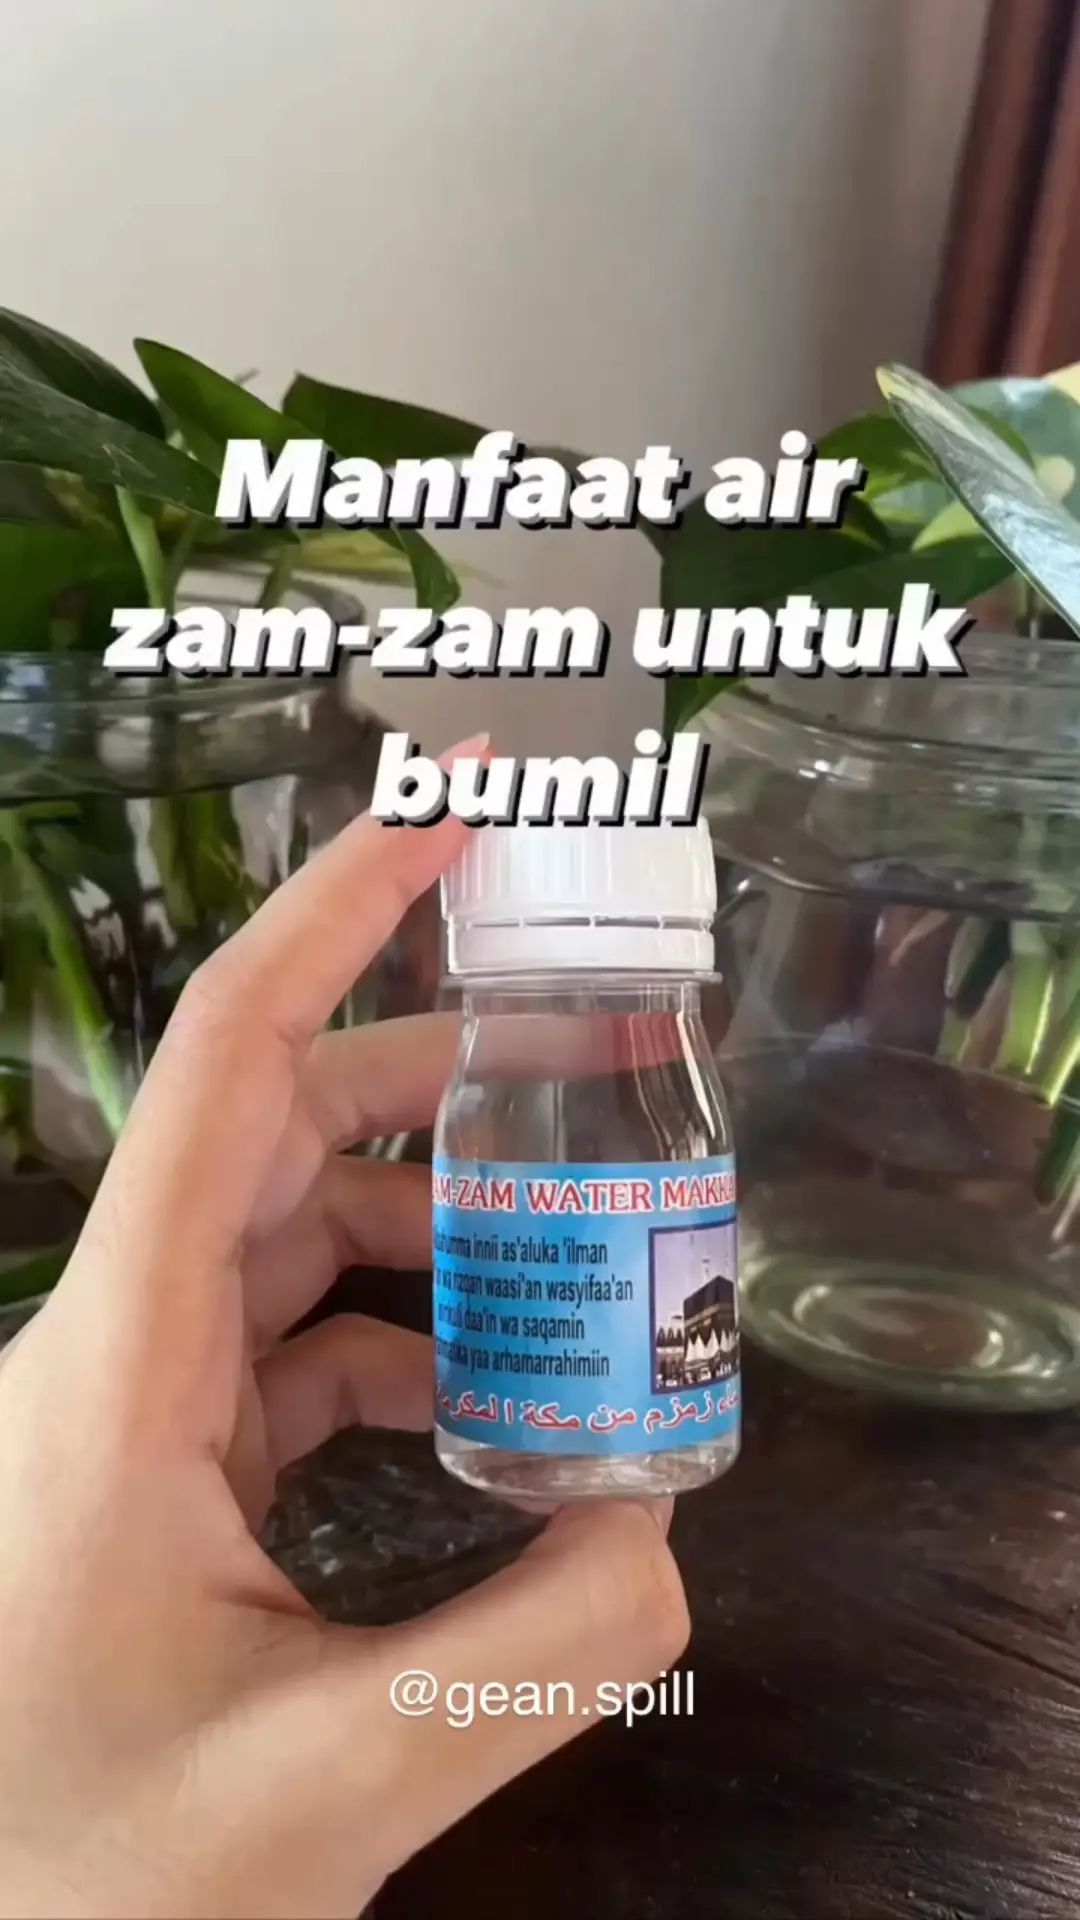 Doa Minum Air Zamzam Untuk Mendapatkan Momongan 